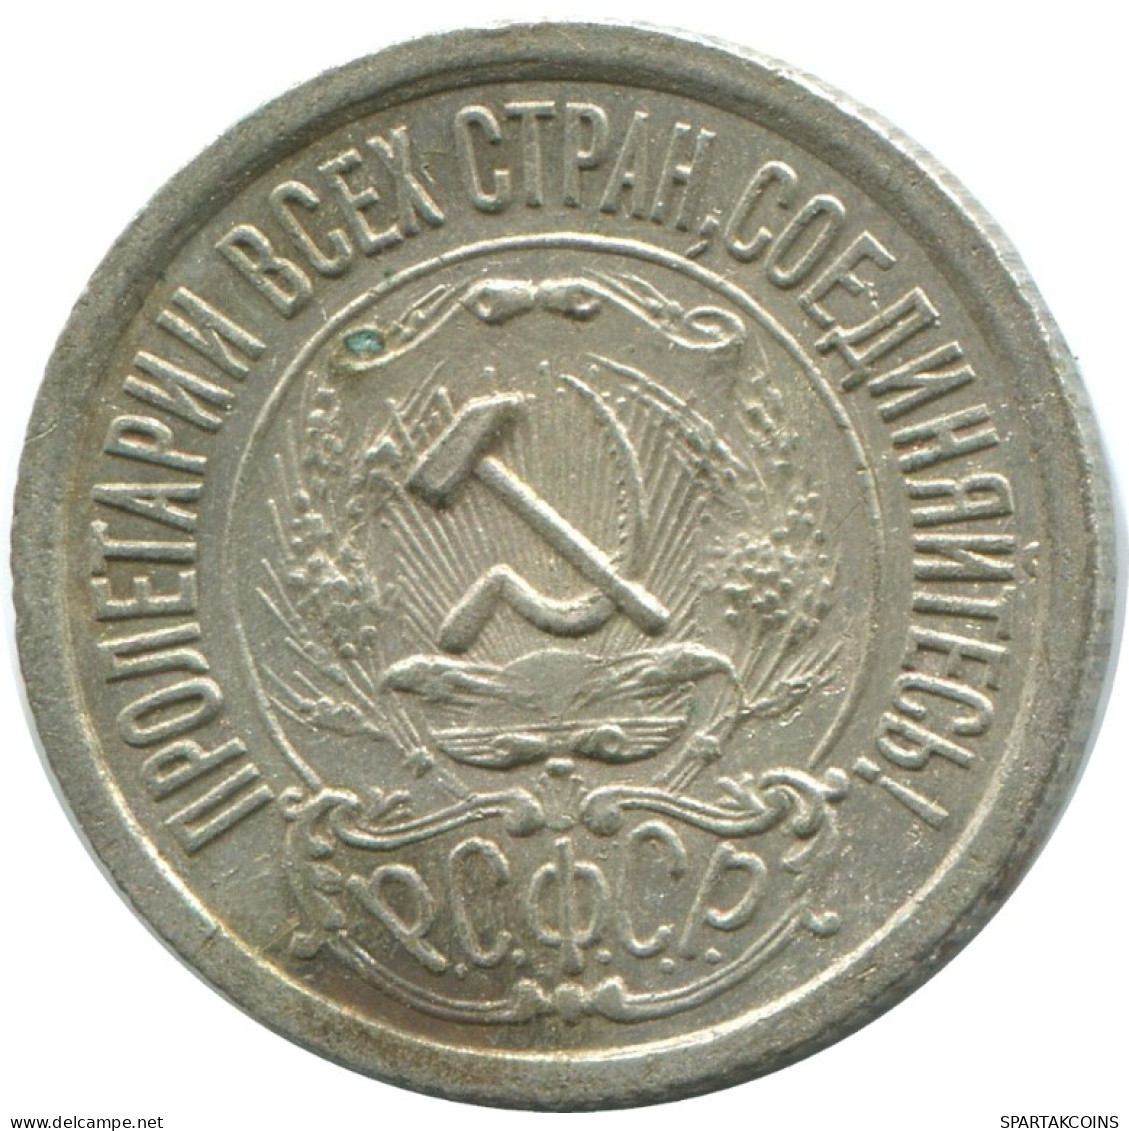 15 KOPEKS 1922 RUSSIA RSFSR SILVER Coin HIGH GRADE #AF175.4.U.A - Russland